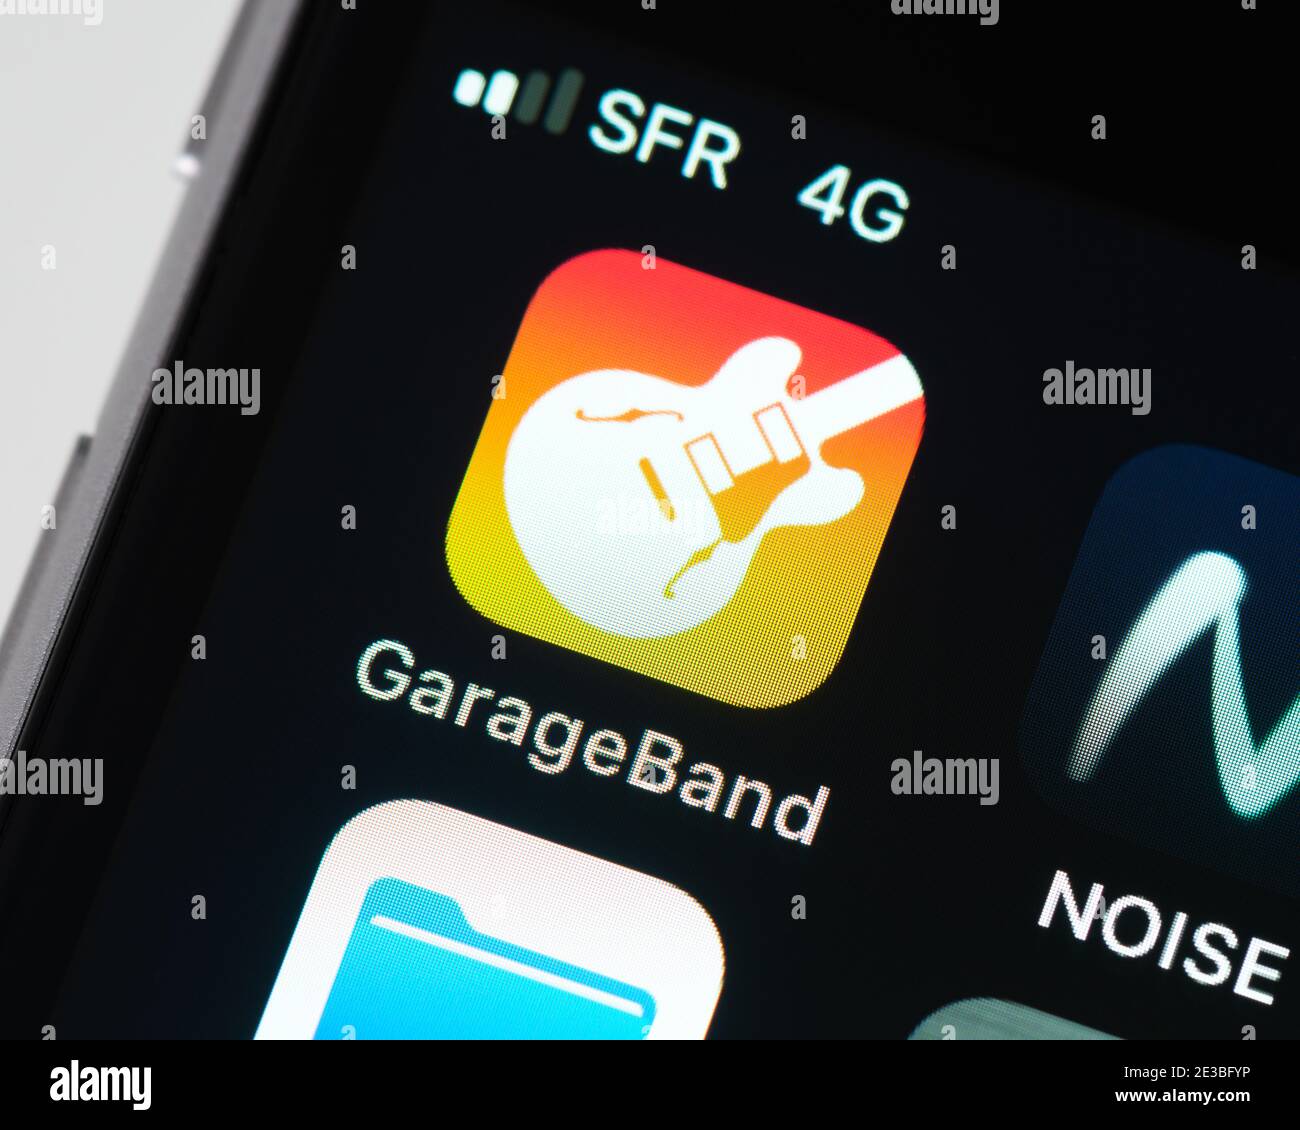 GarageBand App-Symbol auf dem Apple iPhone-Bildschirm. GarageBand ist eine digitale Audio-Workstation, die von Apple entwickelt wurde. Stockfoto